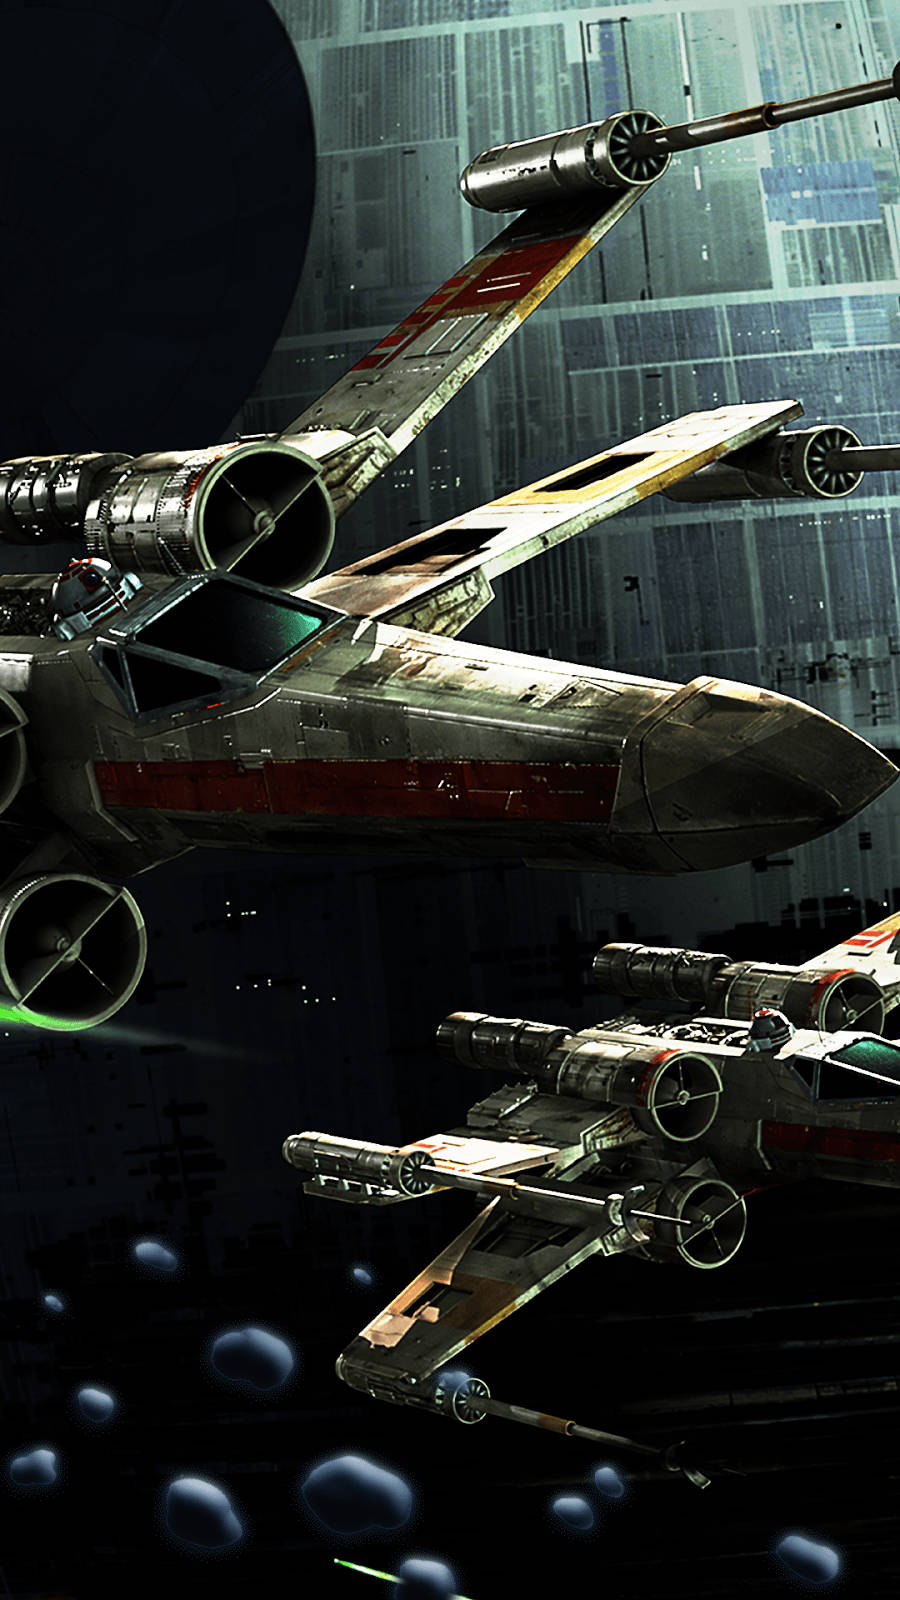 Cooleraumschiffe In Star Wars Für Das Handy Wallpaper